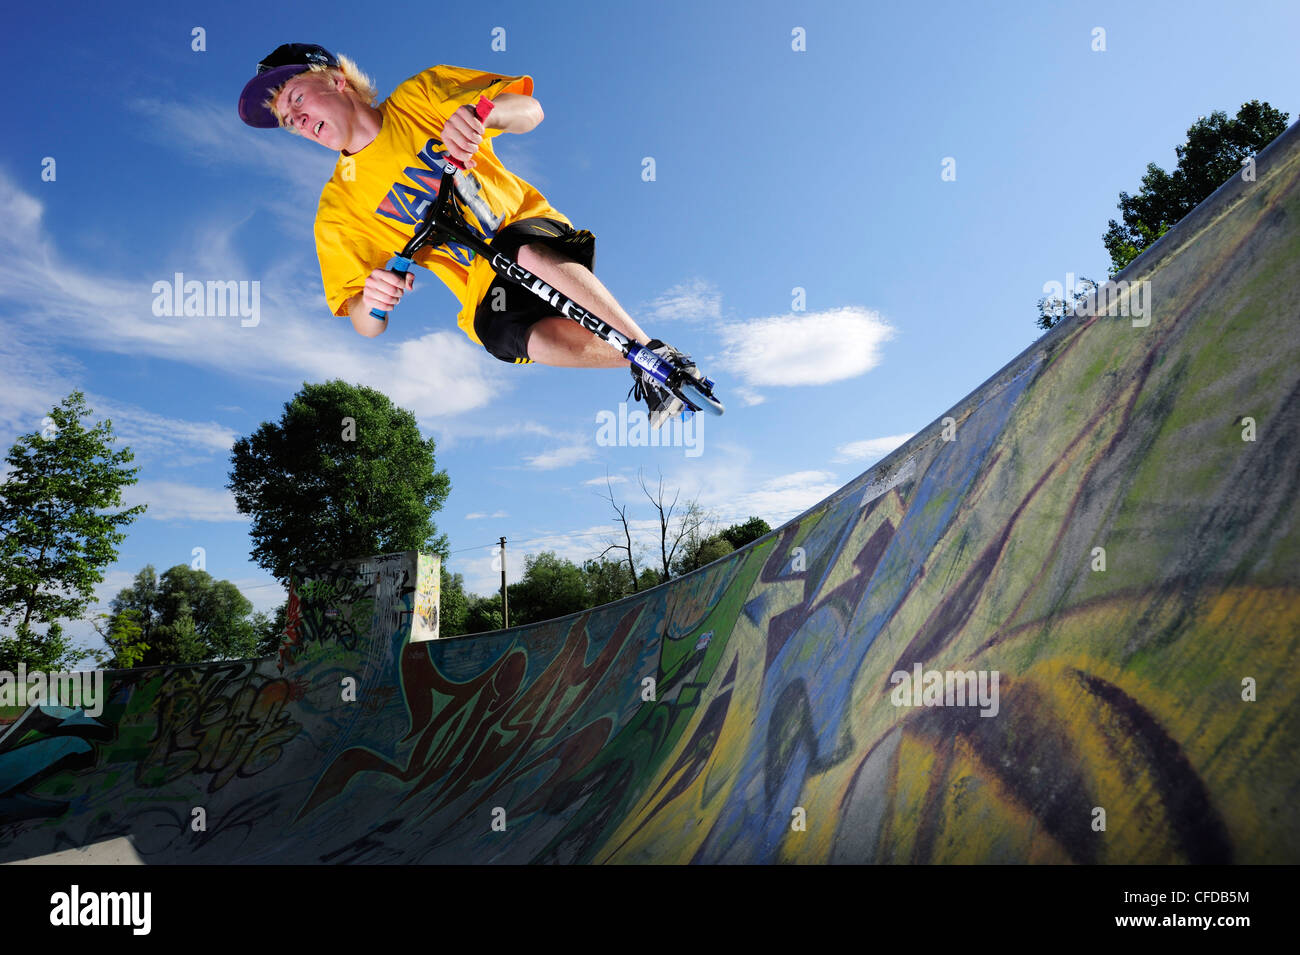 Junger Mann Durchführung Sprung mit Roller, skate-Park, München,  Oberbayern, Deutschland Stockfotografie - Alamy